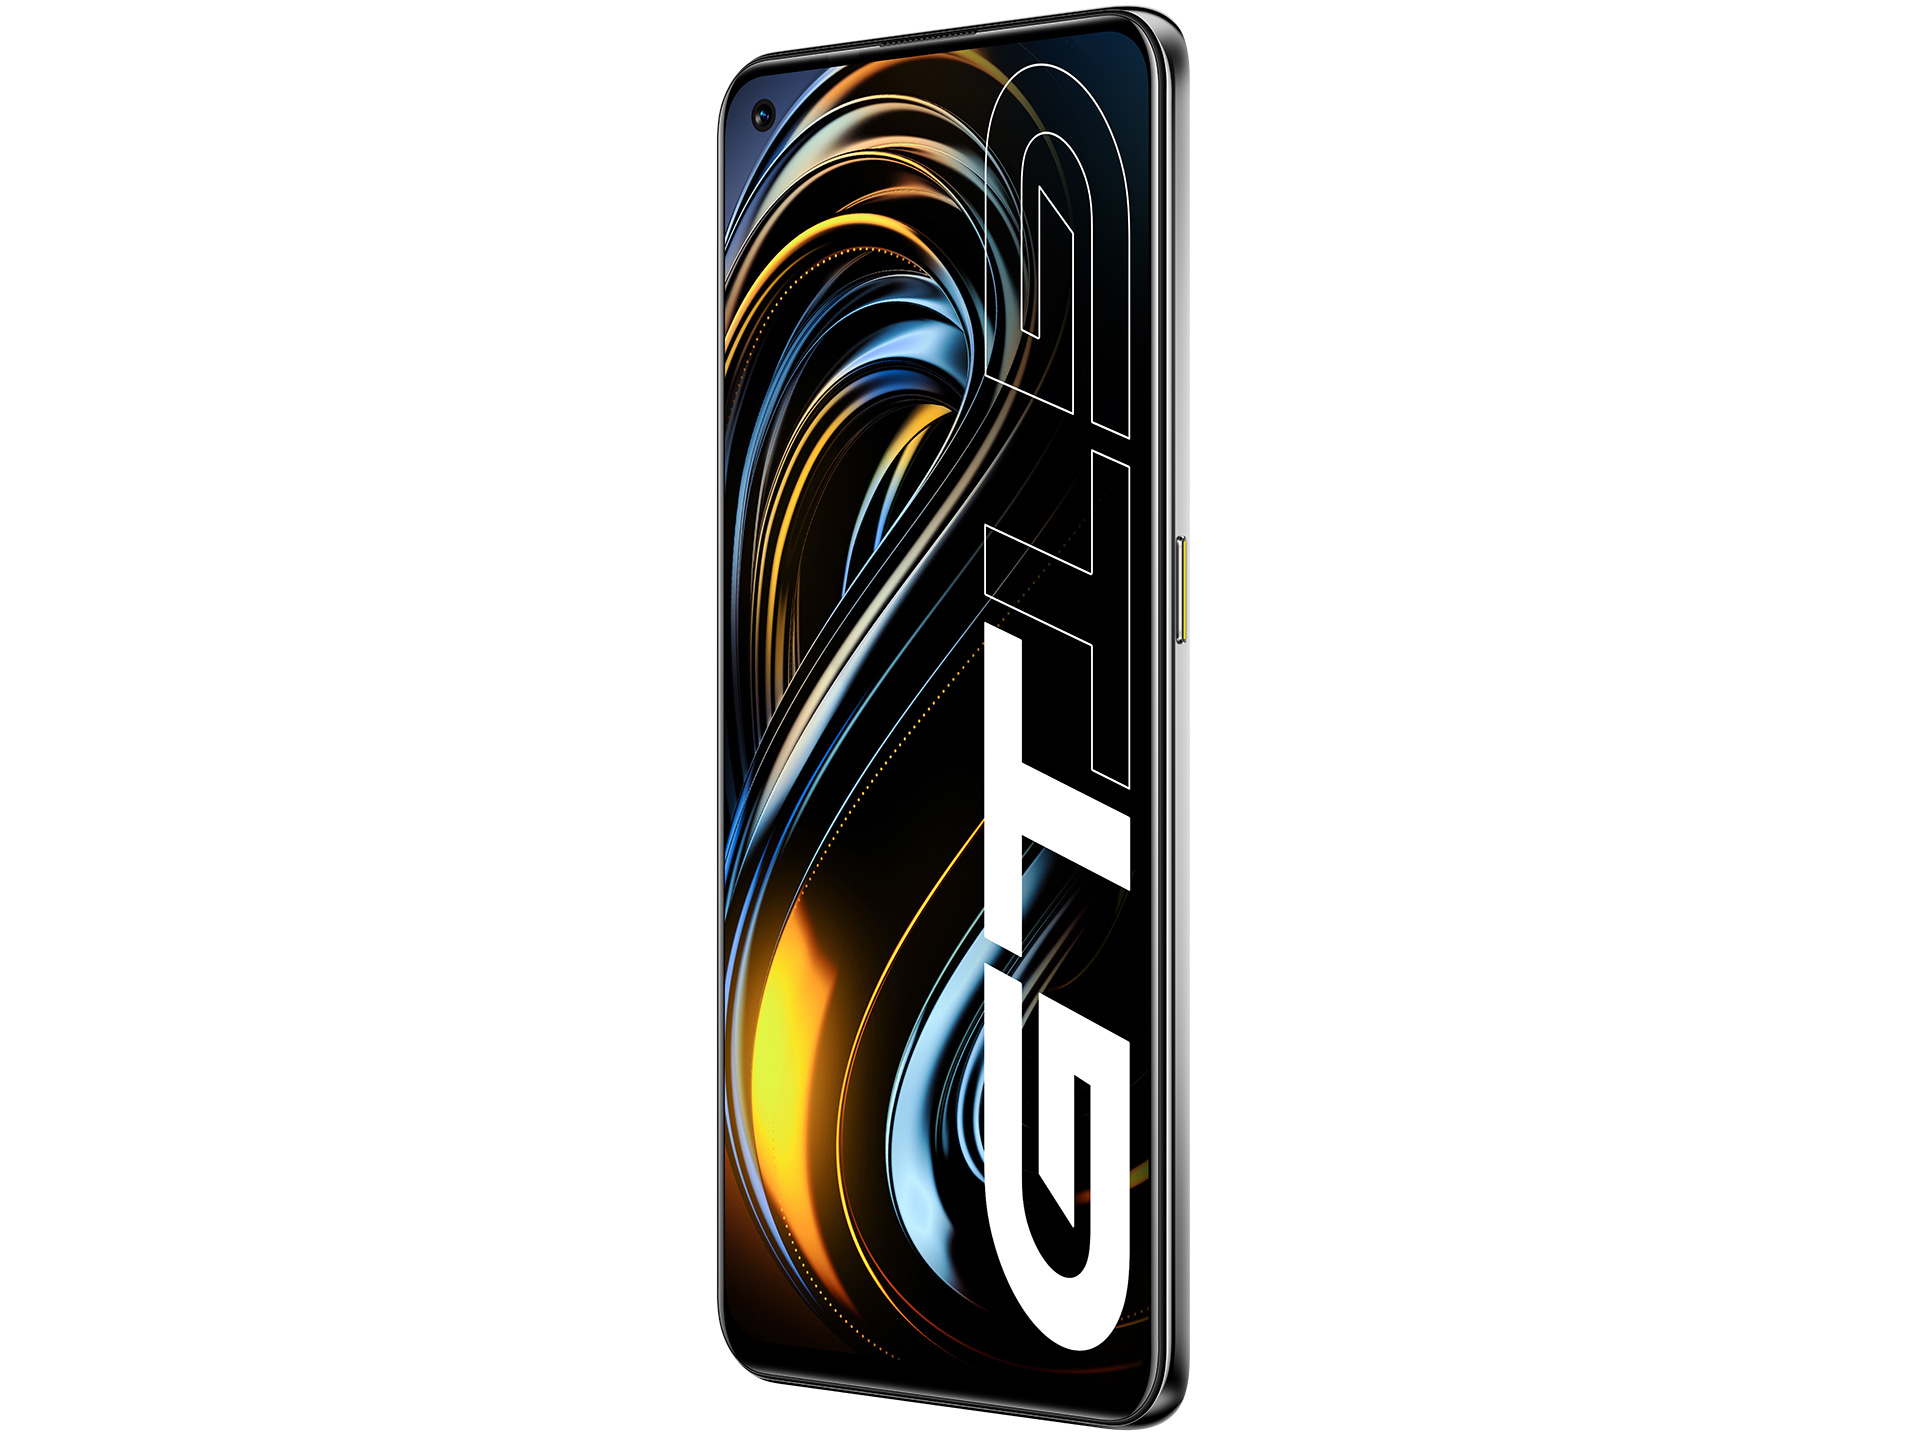 realme GT Series là một trong những dòng sản phẩm cao cấp của realme. Nếu bạn đang tìm kiếm một chiếc điện thoại thông minh chất lượng that đúng với giá trị của chúng, hãy xem hình ảnh của realme GT Series và khám phá những tính năng đặc biệt của nó.